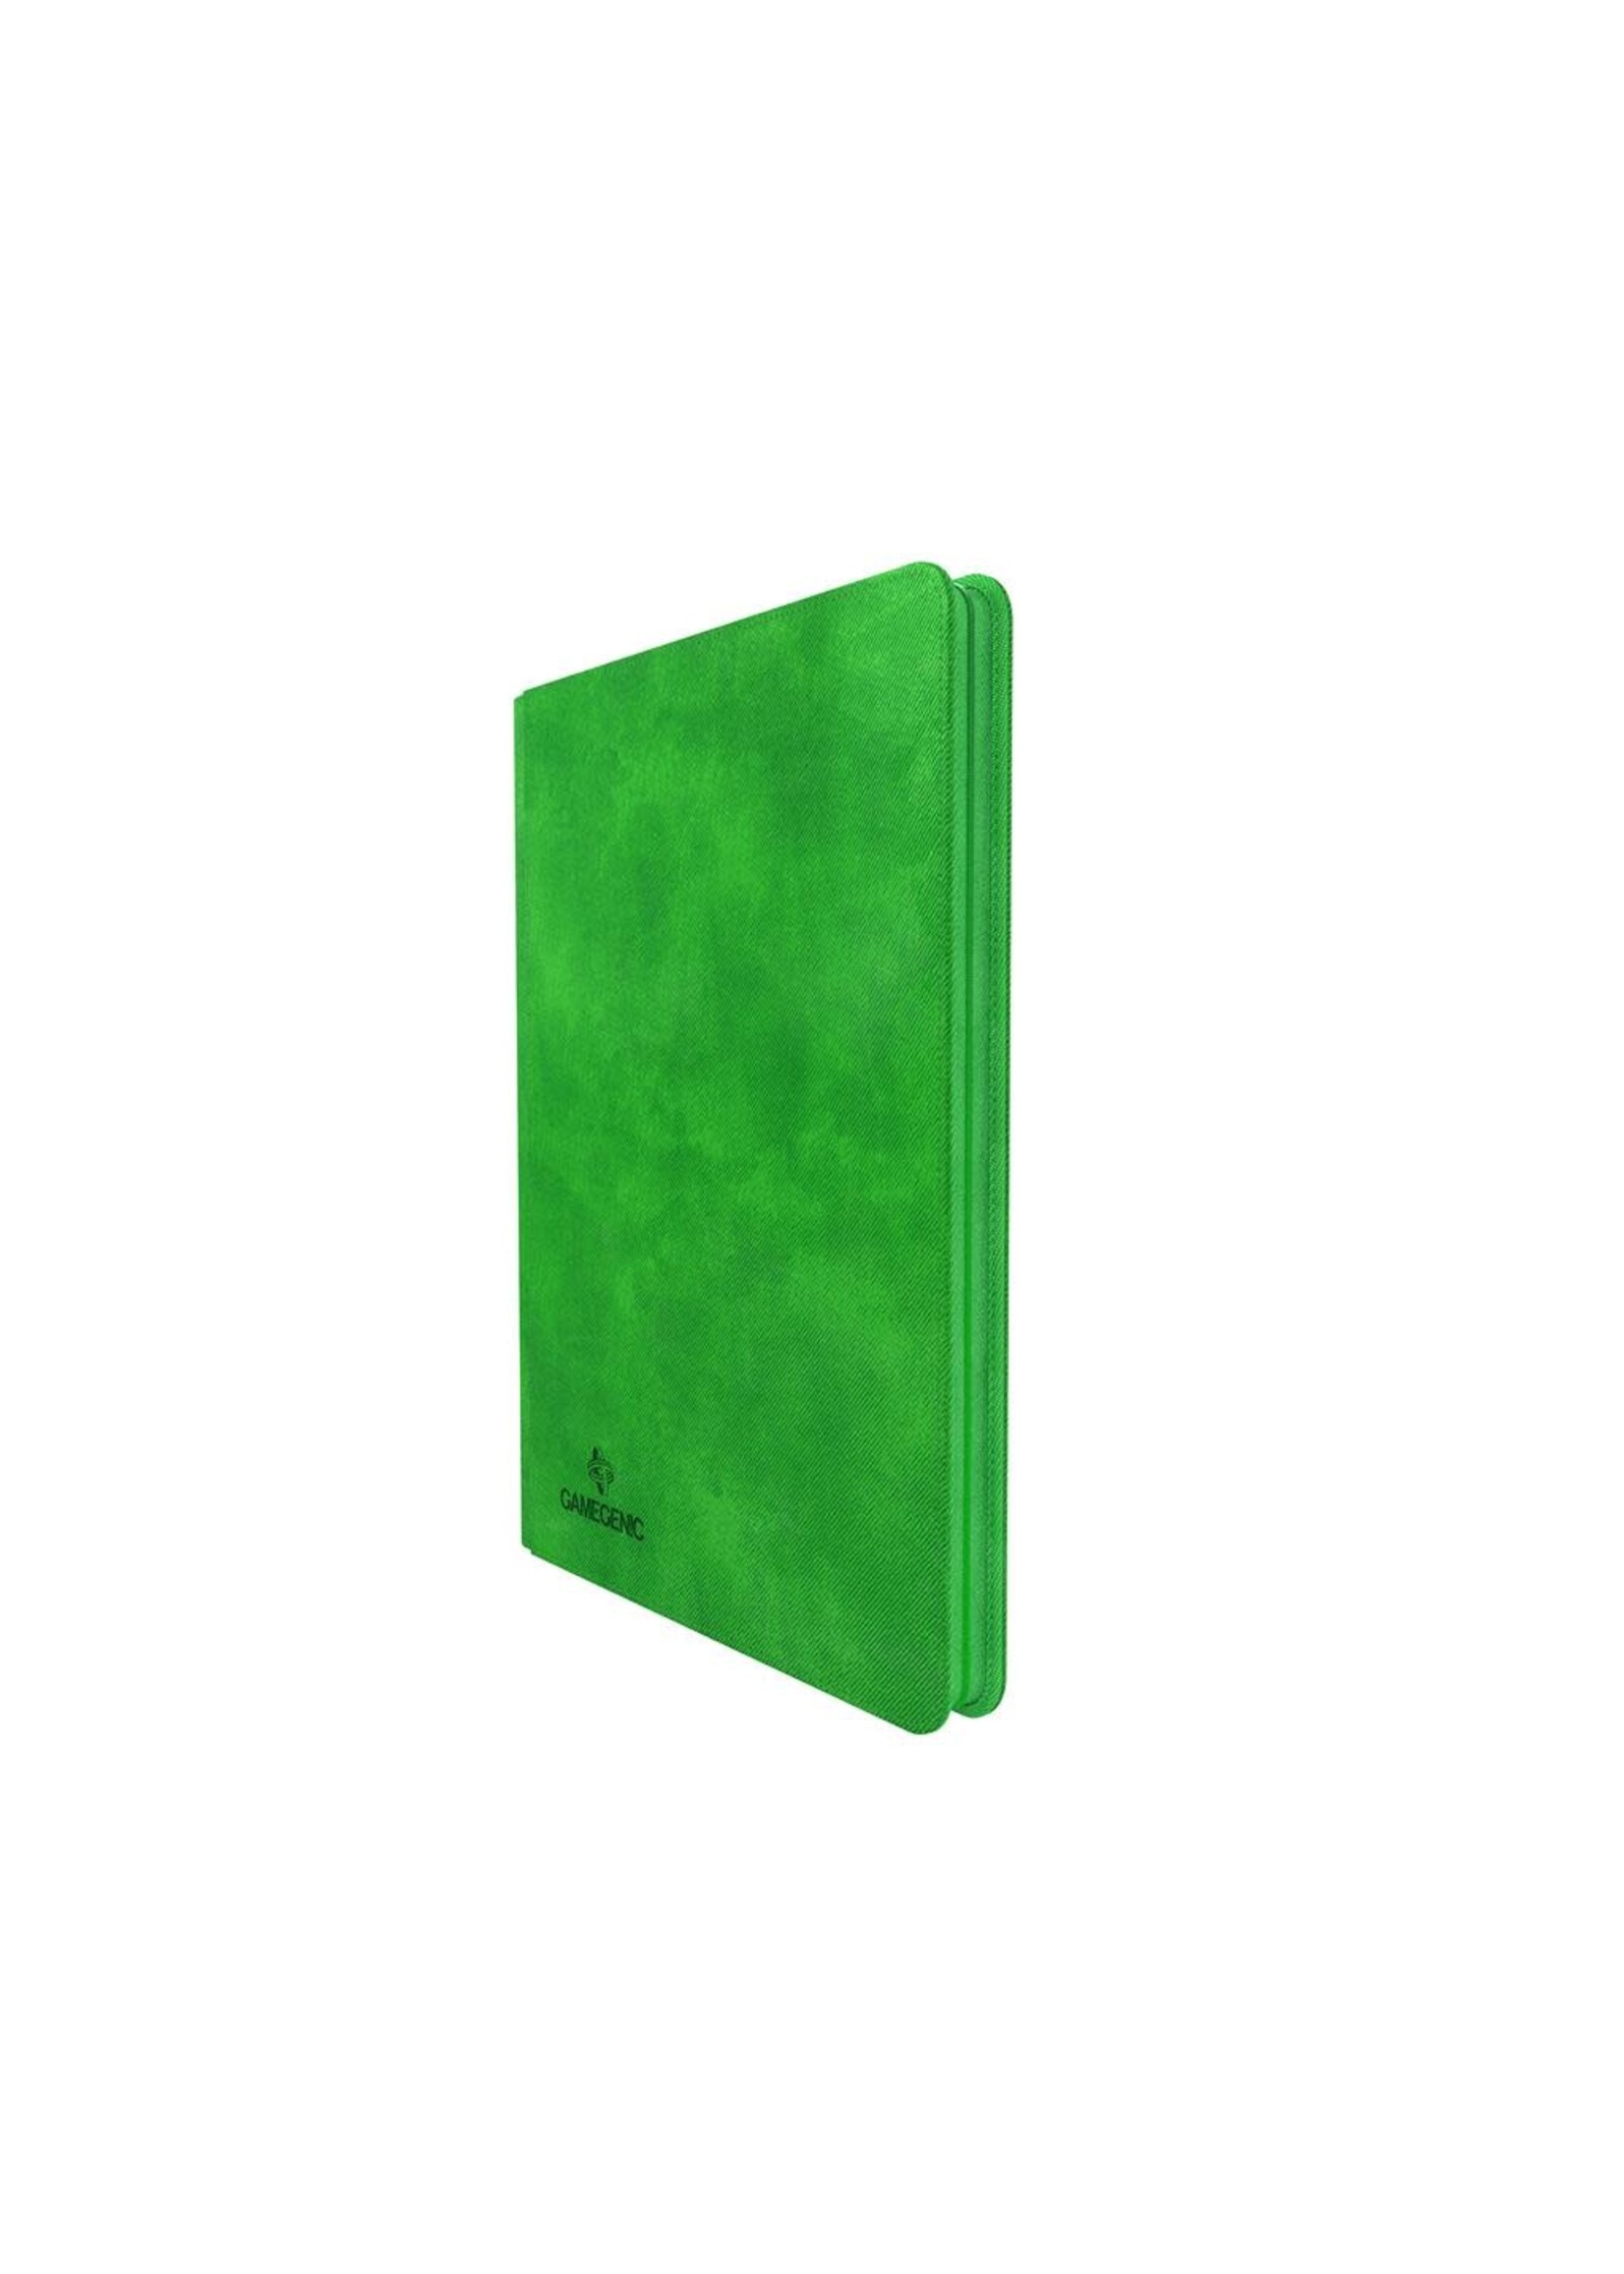 Gamegenic Zip-Up Album 18-Pocket: Green